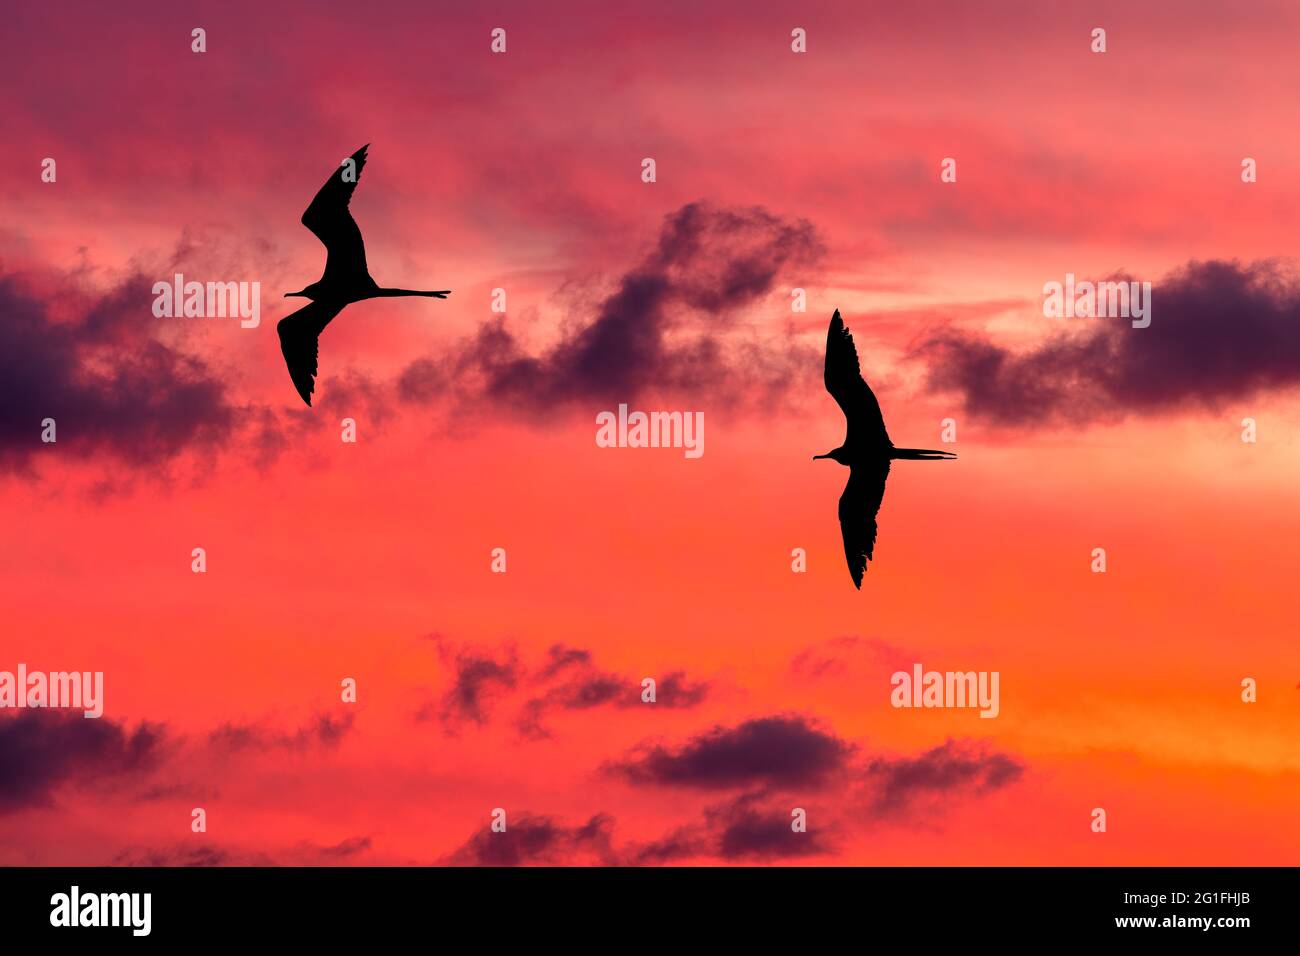 Gli uccelli stanno volando insieme nel vibrante cielo di Sunset riempito di nuvole Foto Stock